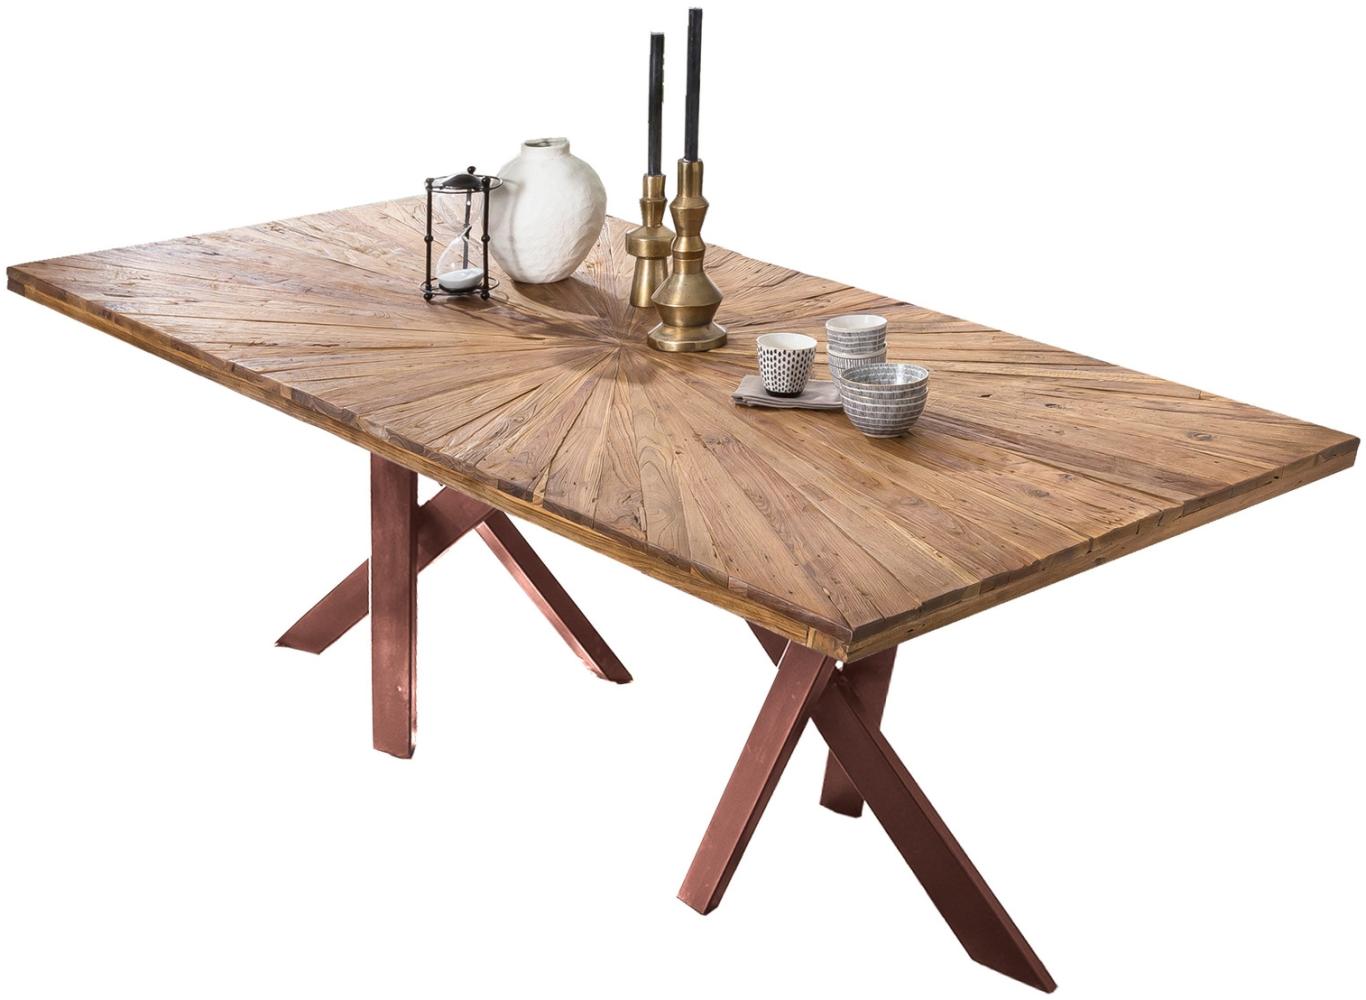 Sit Möbel Tische & Bänke Tisch 200x100 cm, Platte Teak, natur, Gestell Metall antikbraun Bild 1